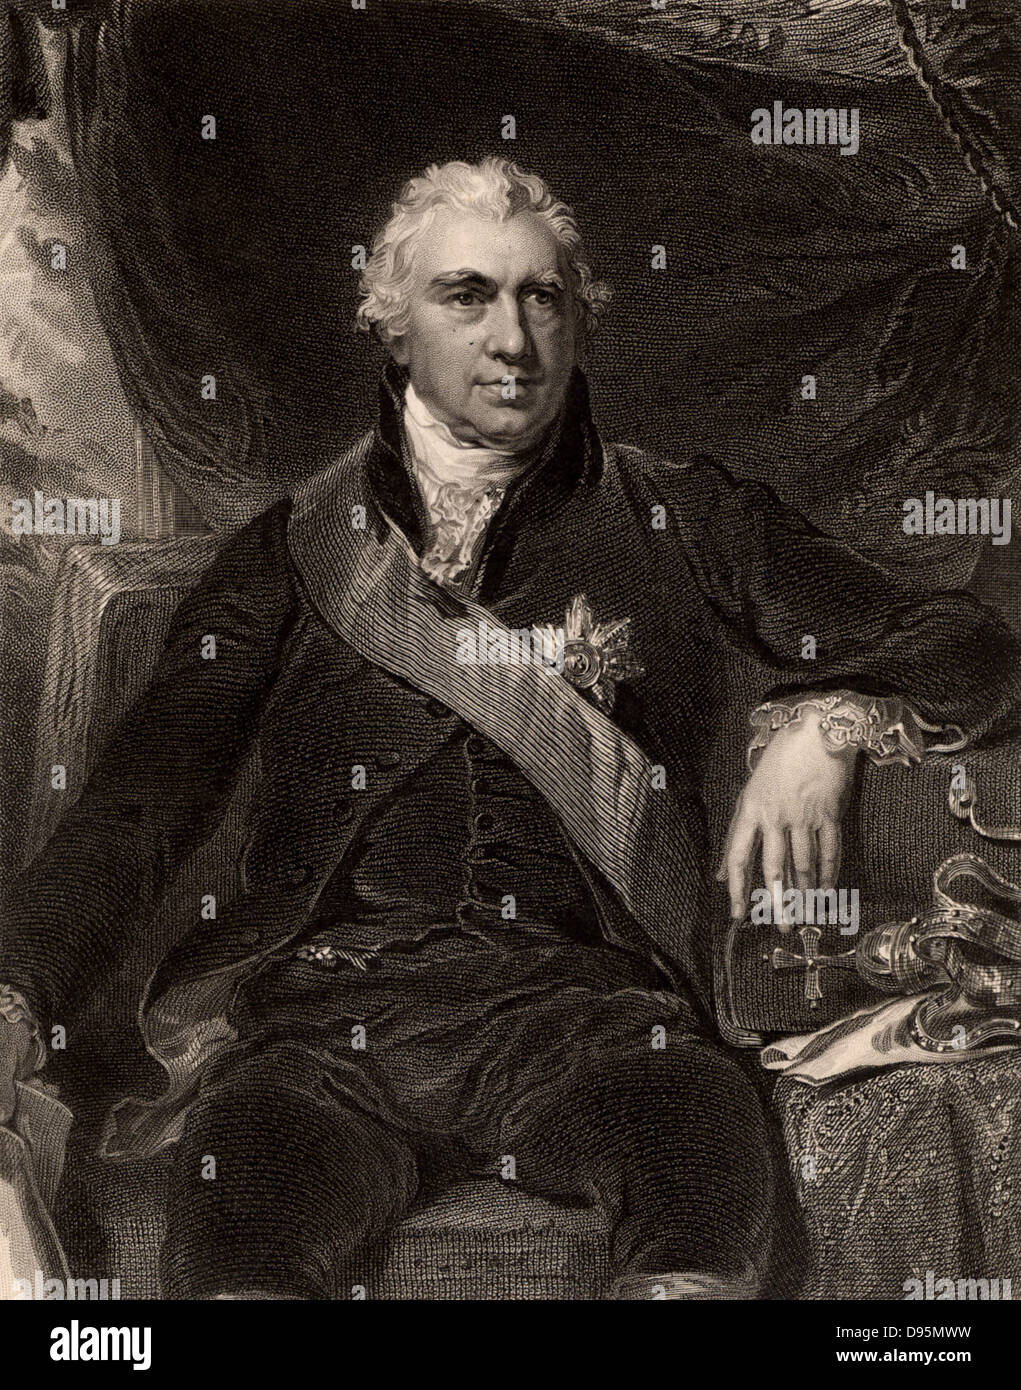 Joseph Banks (1743-1820), botanico inglese e impianto collettore; navigato con James Cook su "Endeavour" 1768-1871; presidente della Royal Society per 41 anni dal 1778; dopo incisione ritratto da Thomas Lawrence. Foto Stock